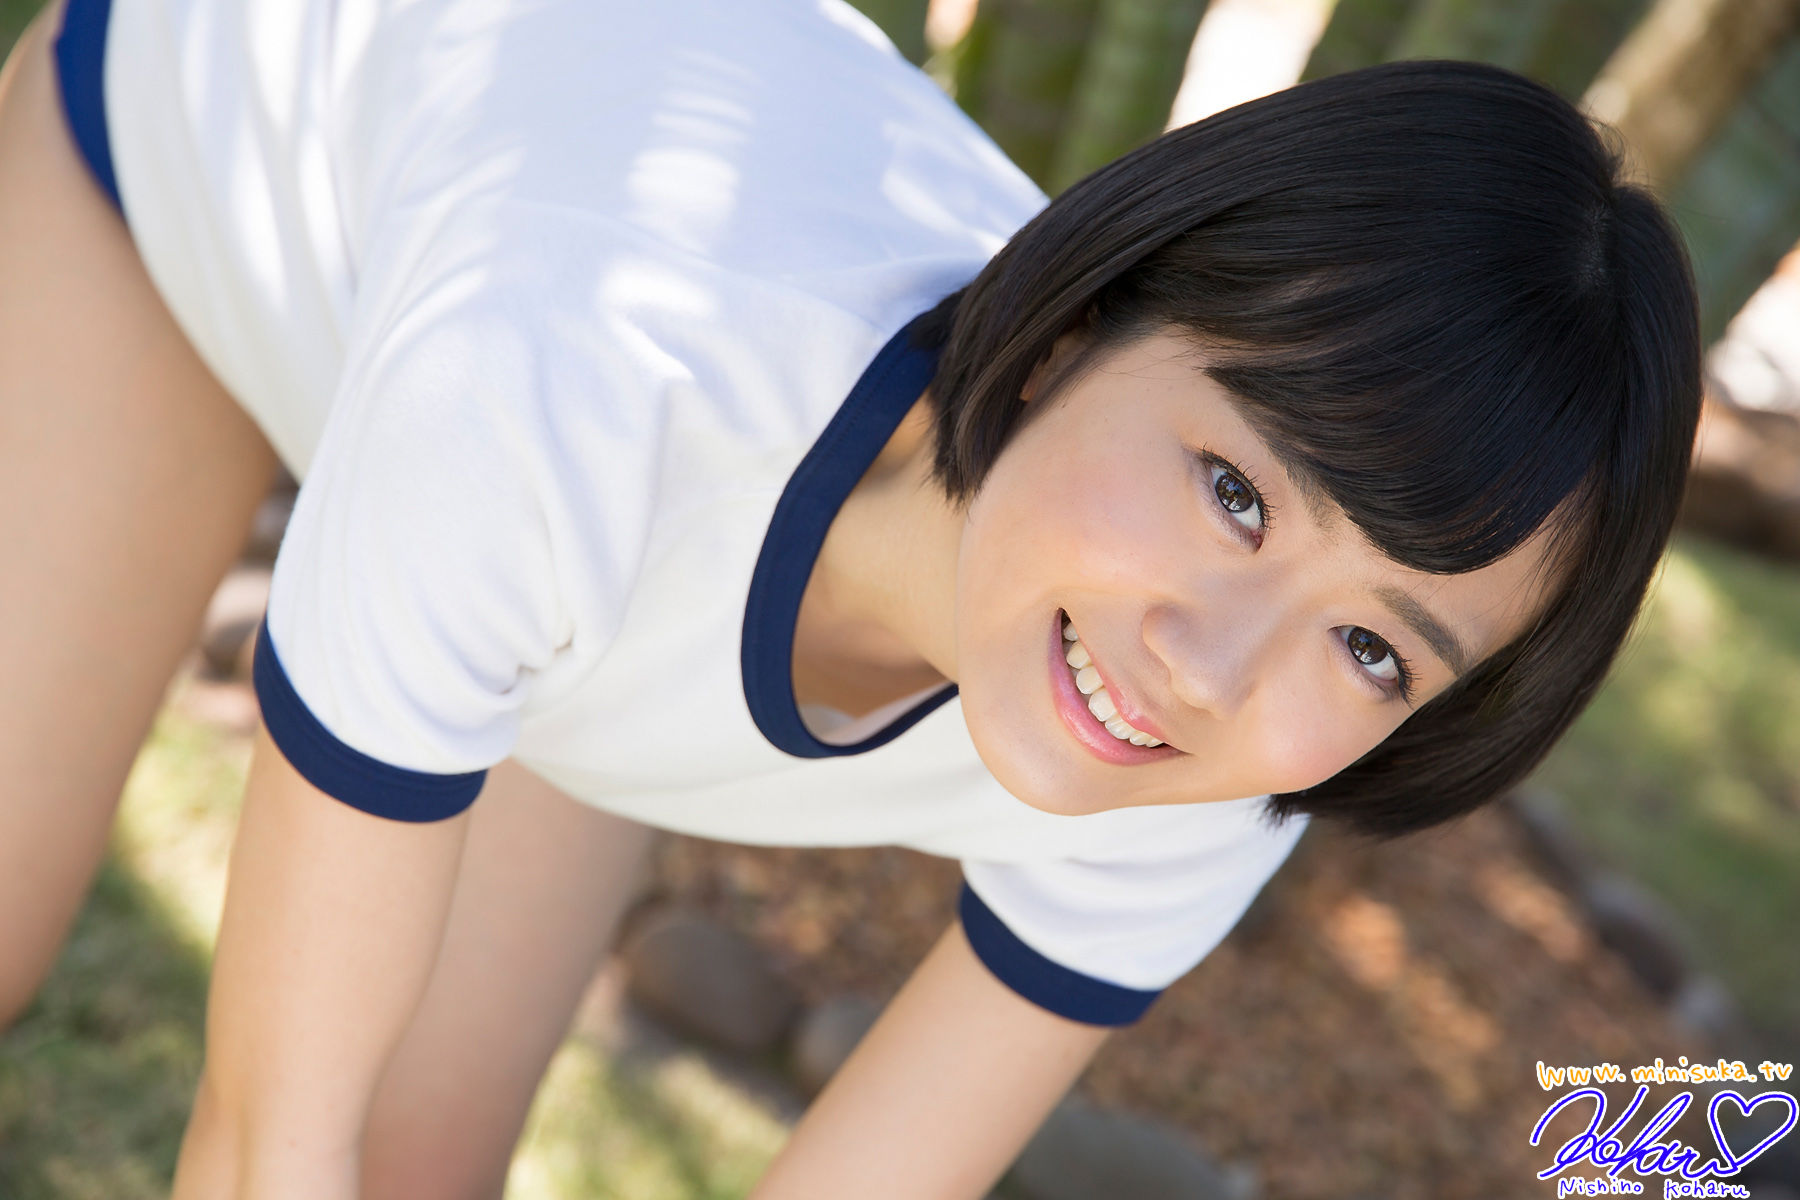 Koharu Nishino Koharu Nishino Bagian 17 Minisuka.tv Galeri Rahasia (STAGE1)...